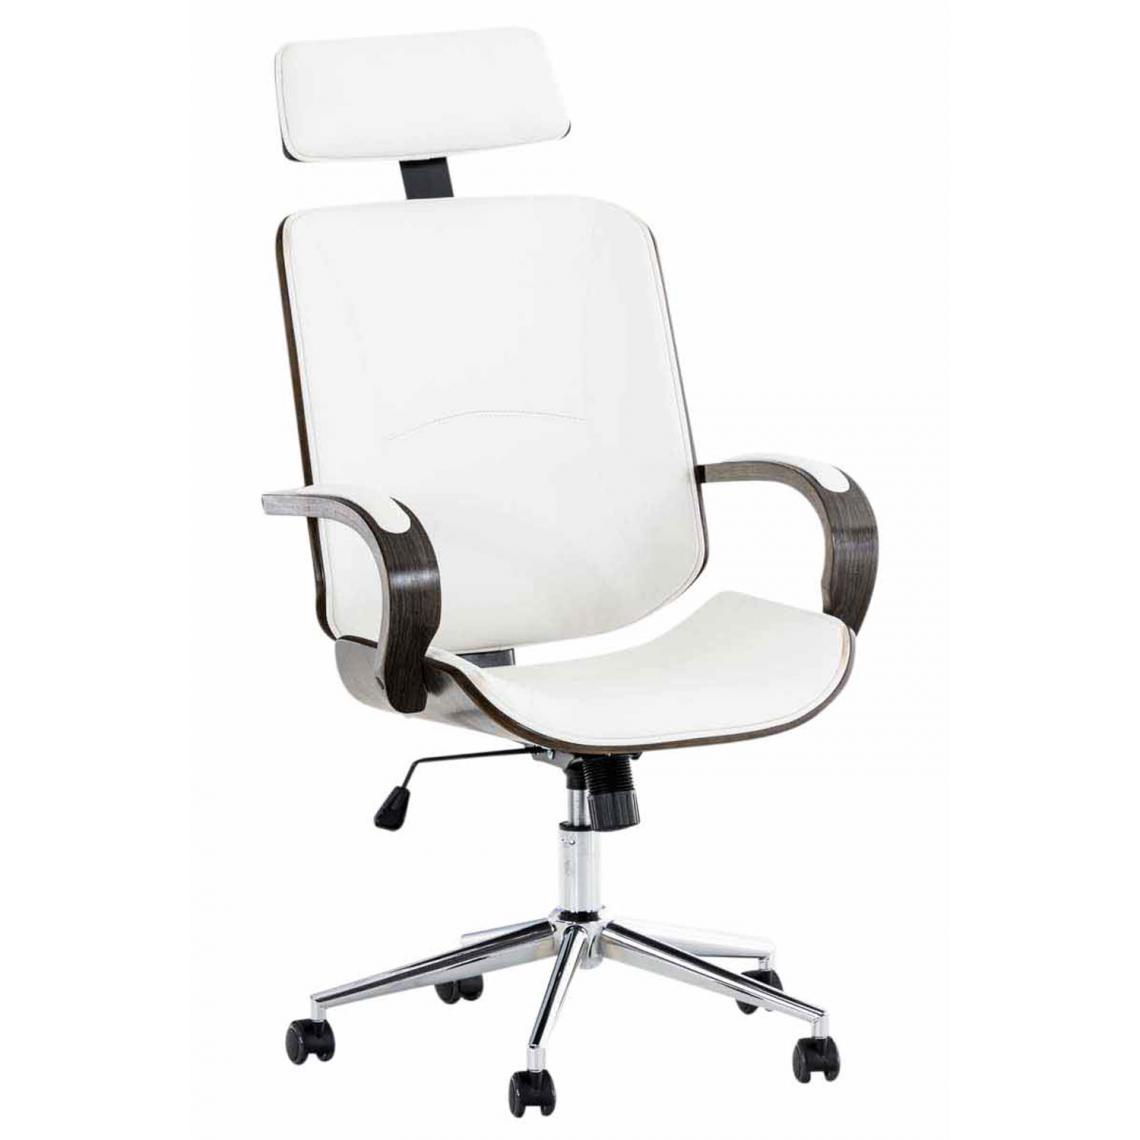 Icaverne - Joli Chaise de bureau serie Tachkent gris couleur blanc / gris - Chaises